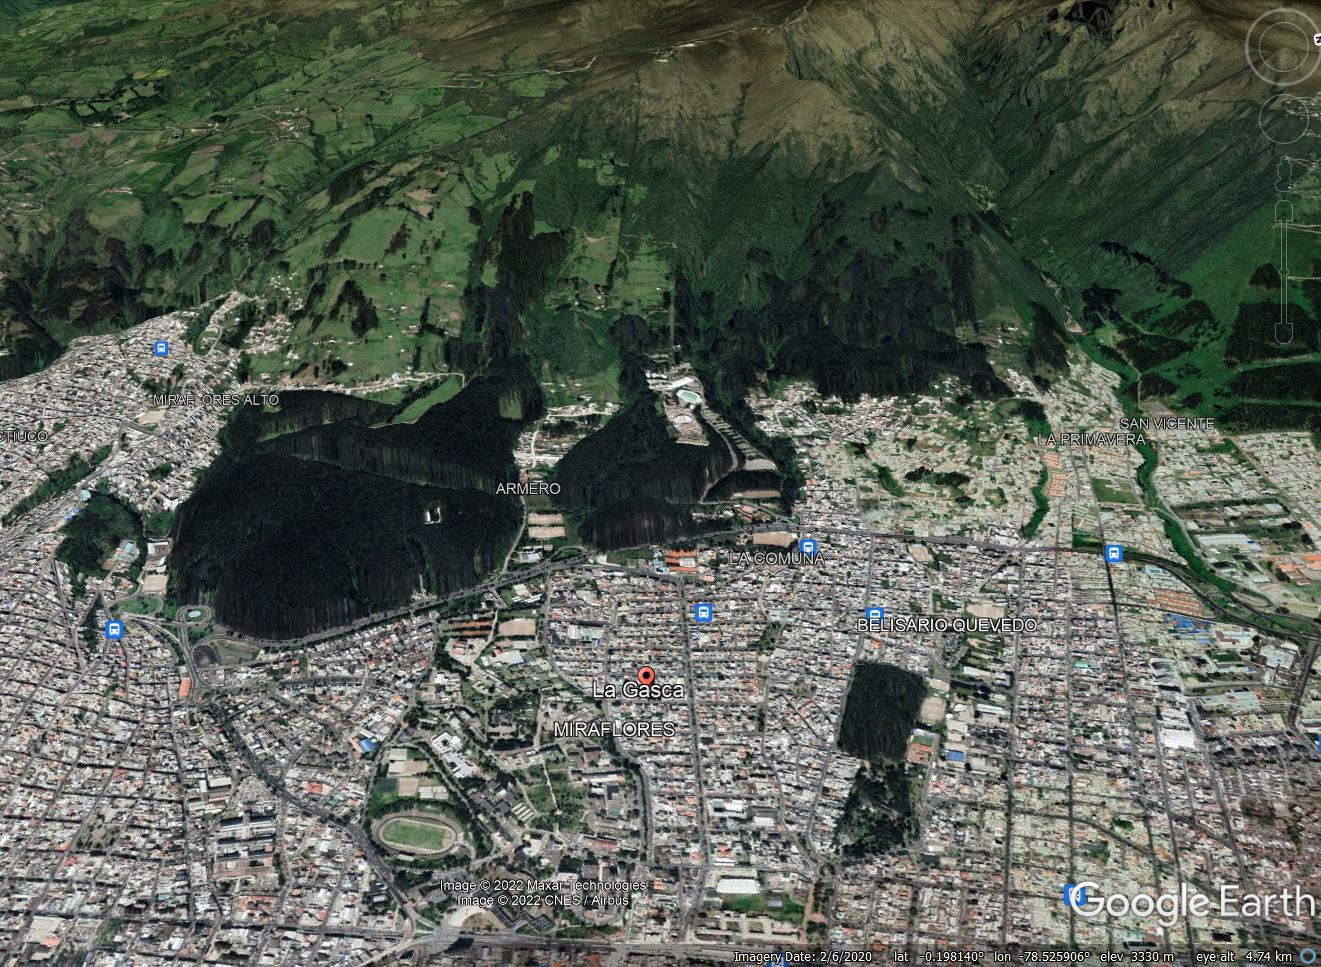 Google Earth image of the La Gasca suburb of Quito.